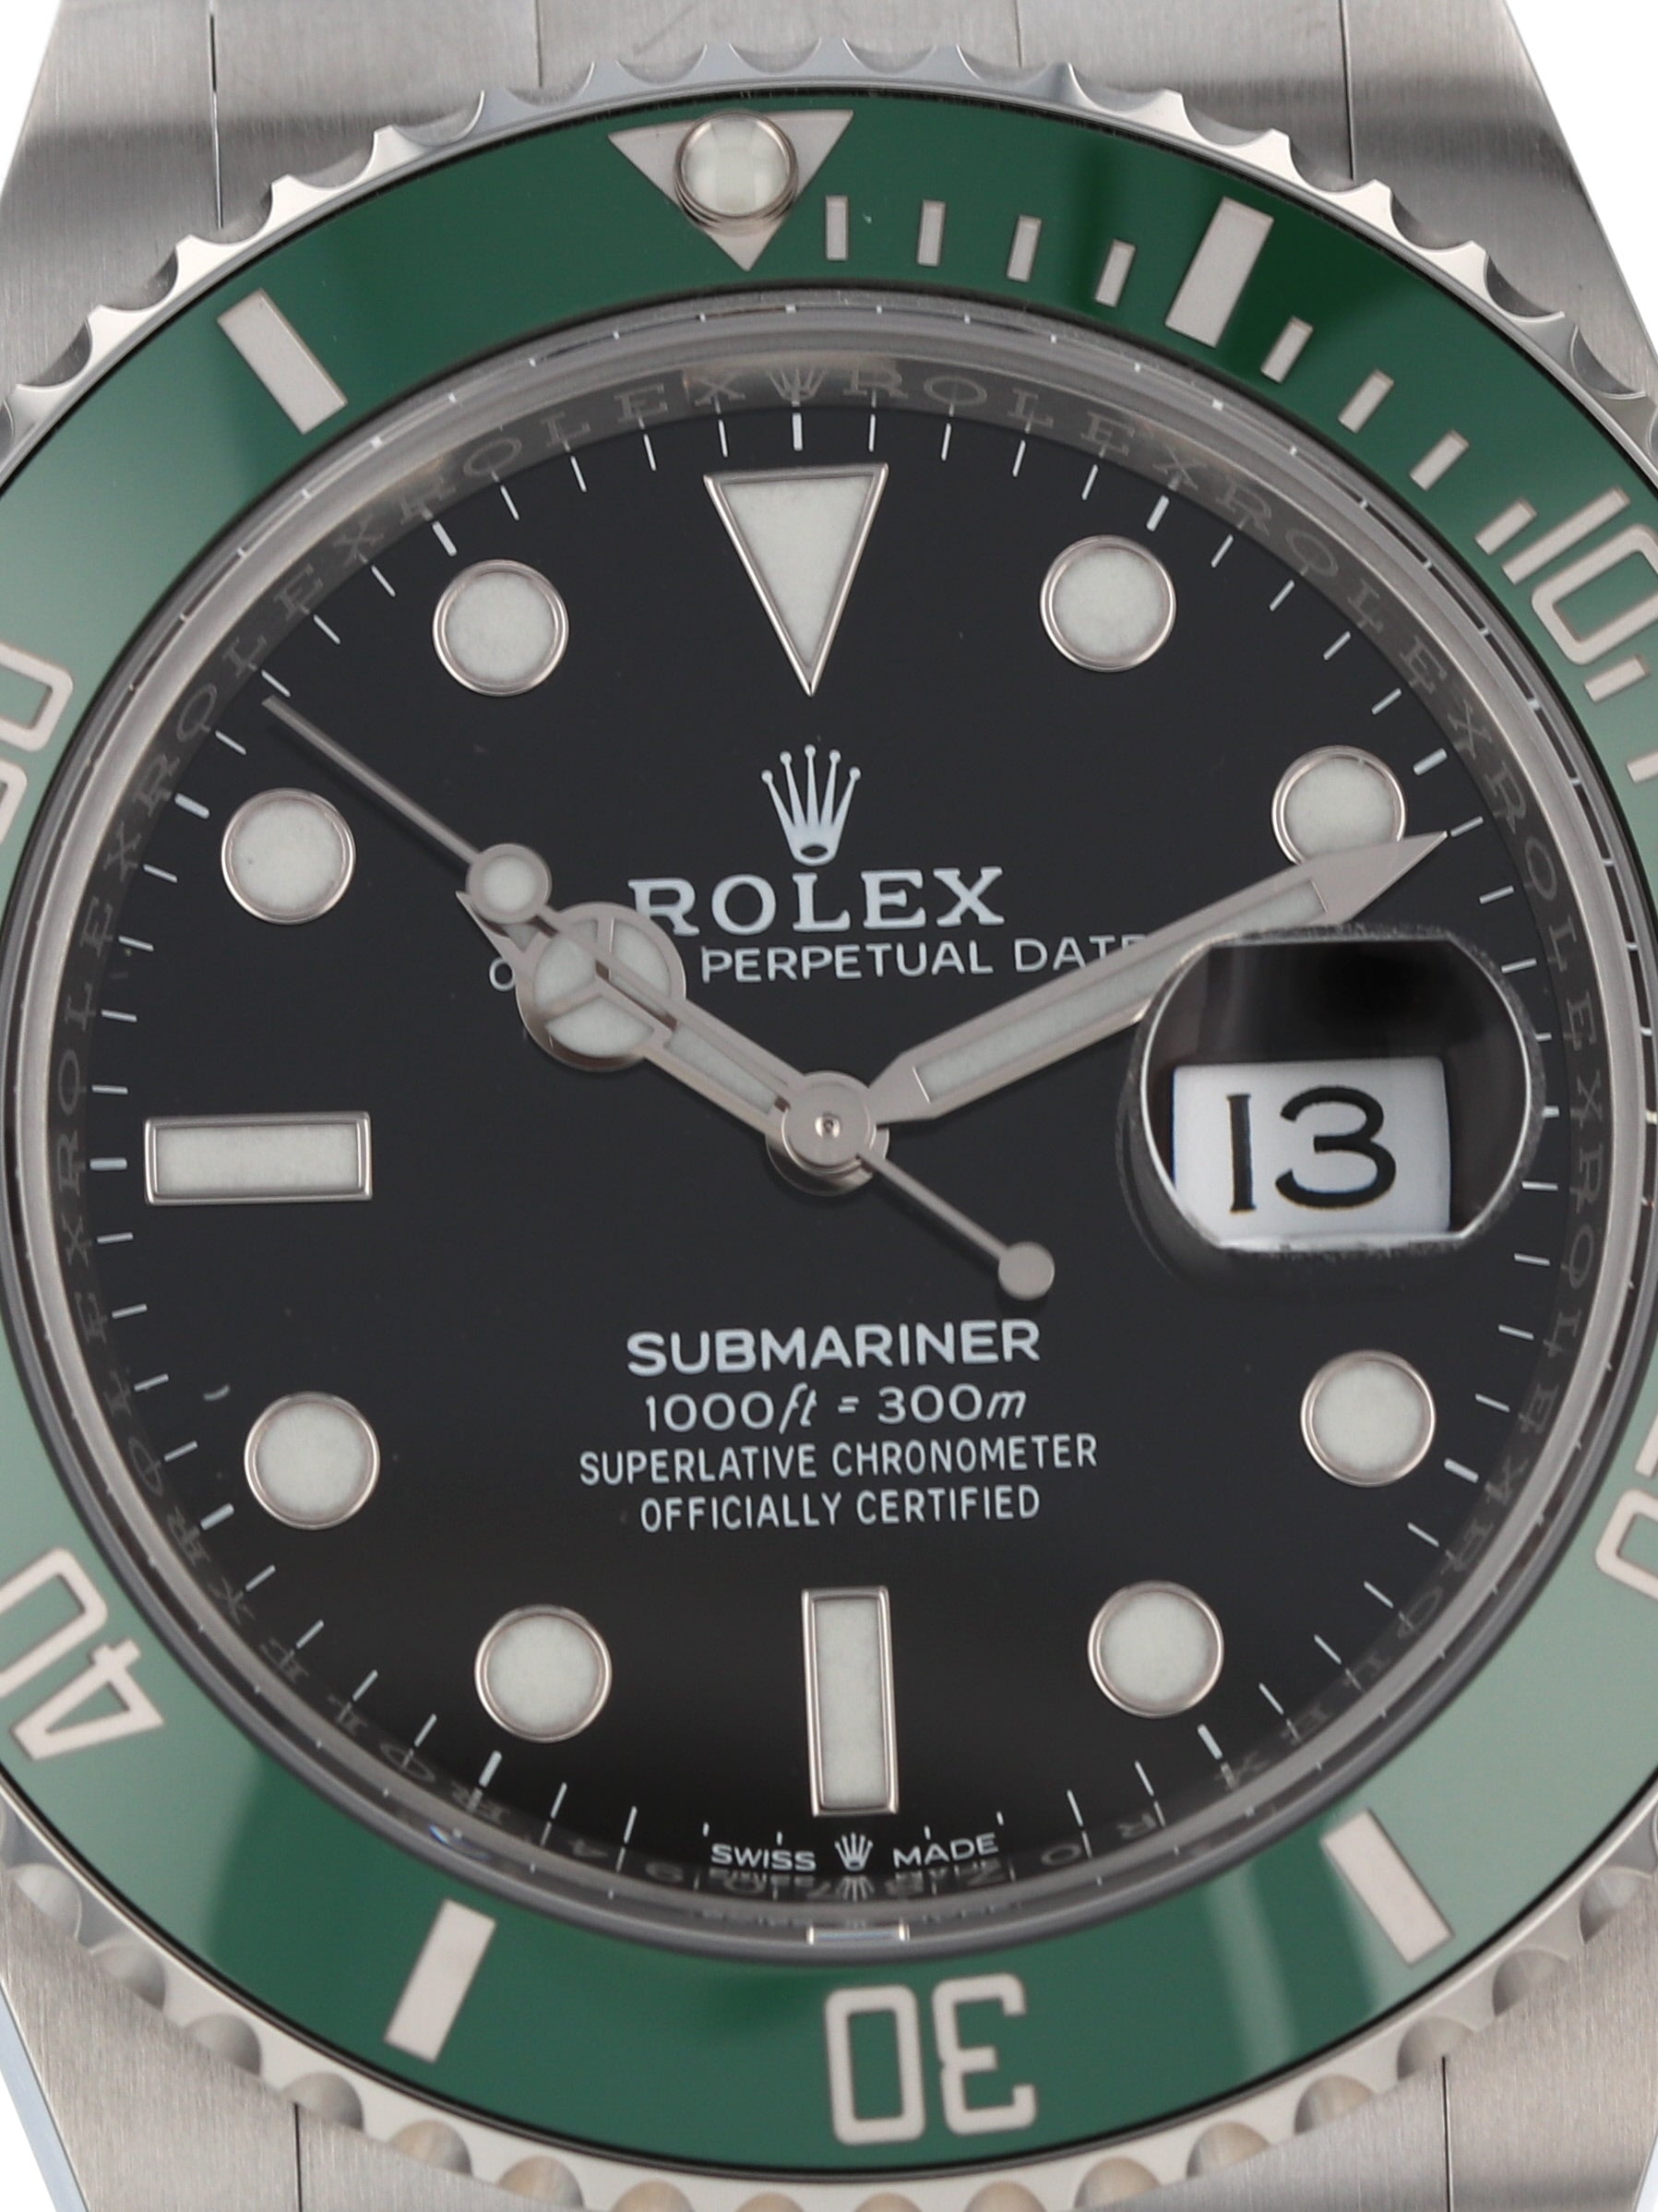 Rolex Submariner 41 Kermit Green Bezel Mens Watch 126610LV Unworn